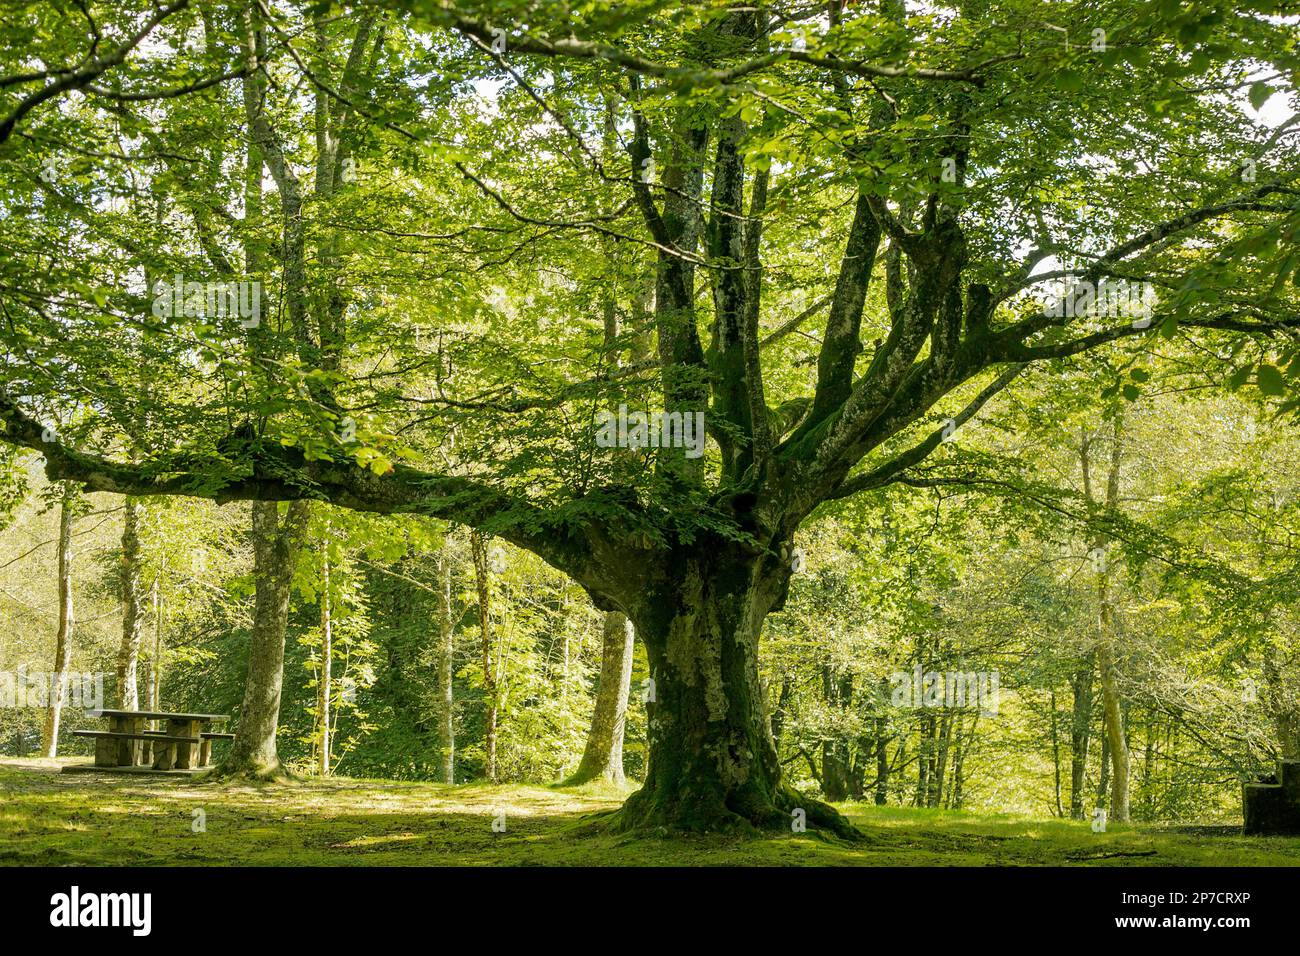 Spécimen d'un grand hêtre dans le parc naturel d'Urkiola, pays Basque, Espagne. Espace de loisirs. Pique-nique. Banque D'Images